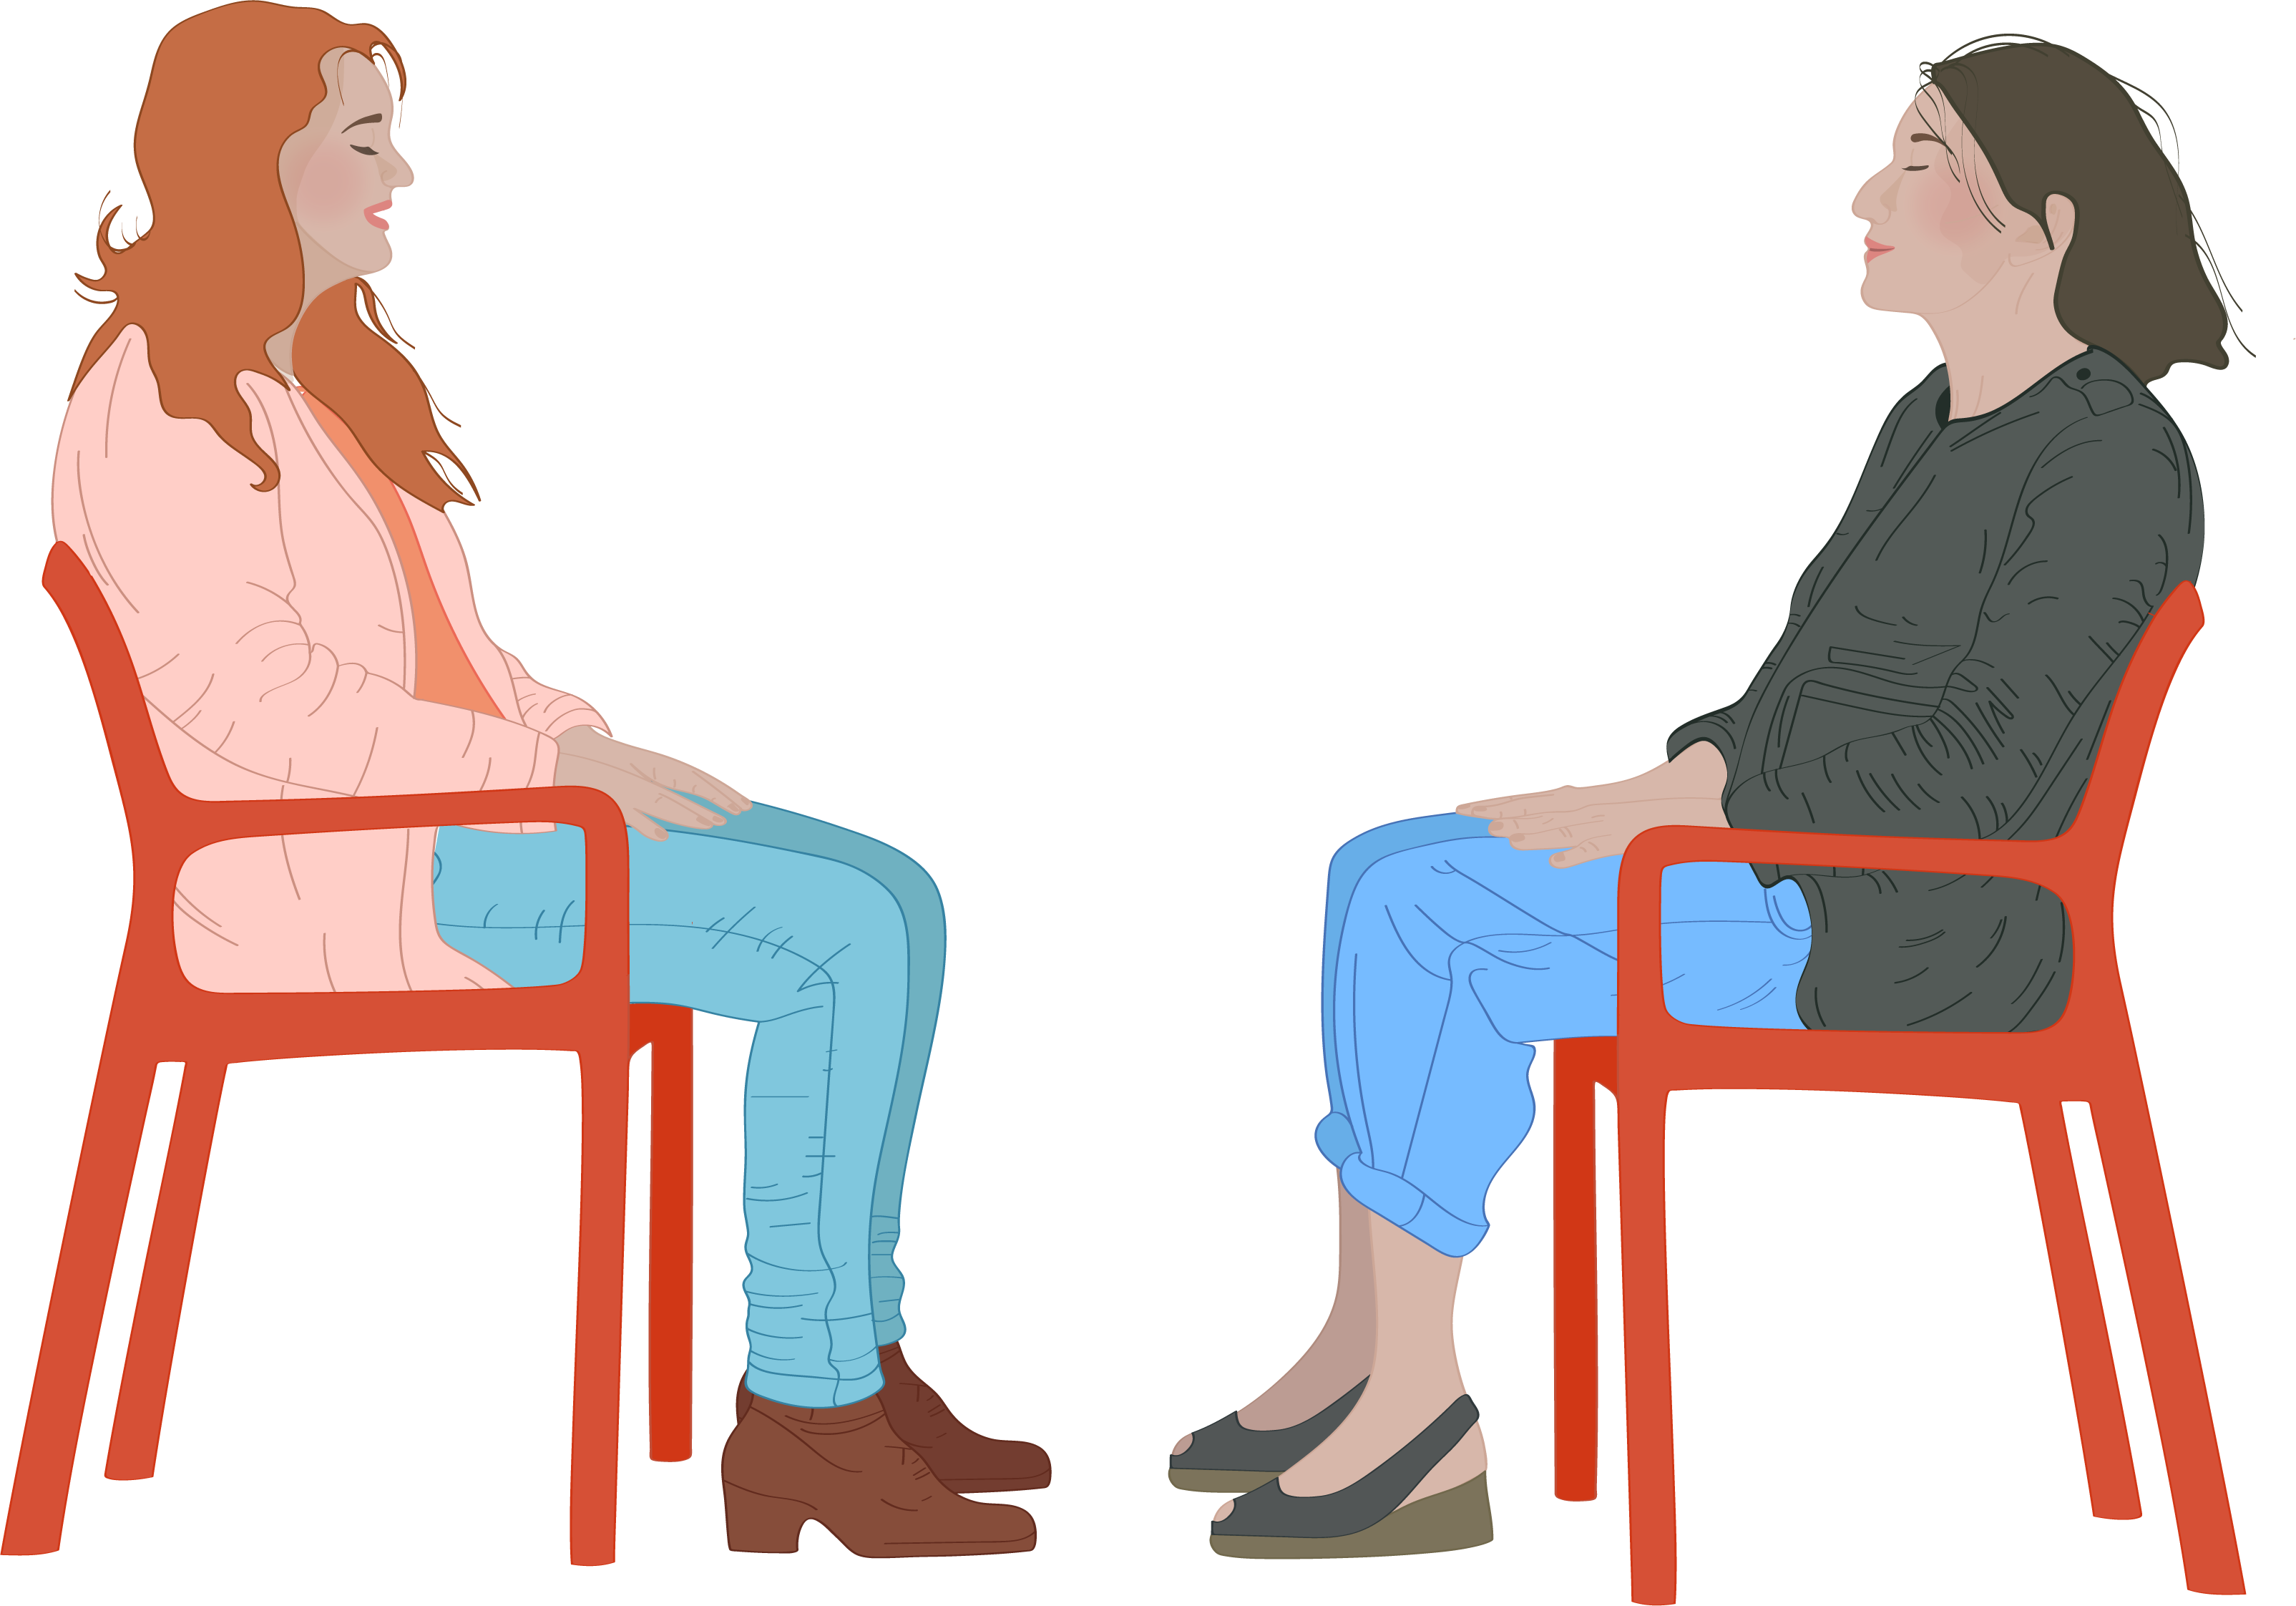 Deux femmes se tiennent assises l'une face à l'autre, les yeux clos, mains posées sur les genoux. Elles sont assises sur des chaises rouges, nous les voyons de profil.